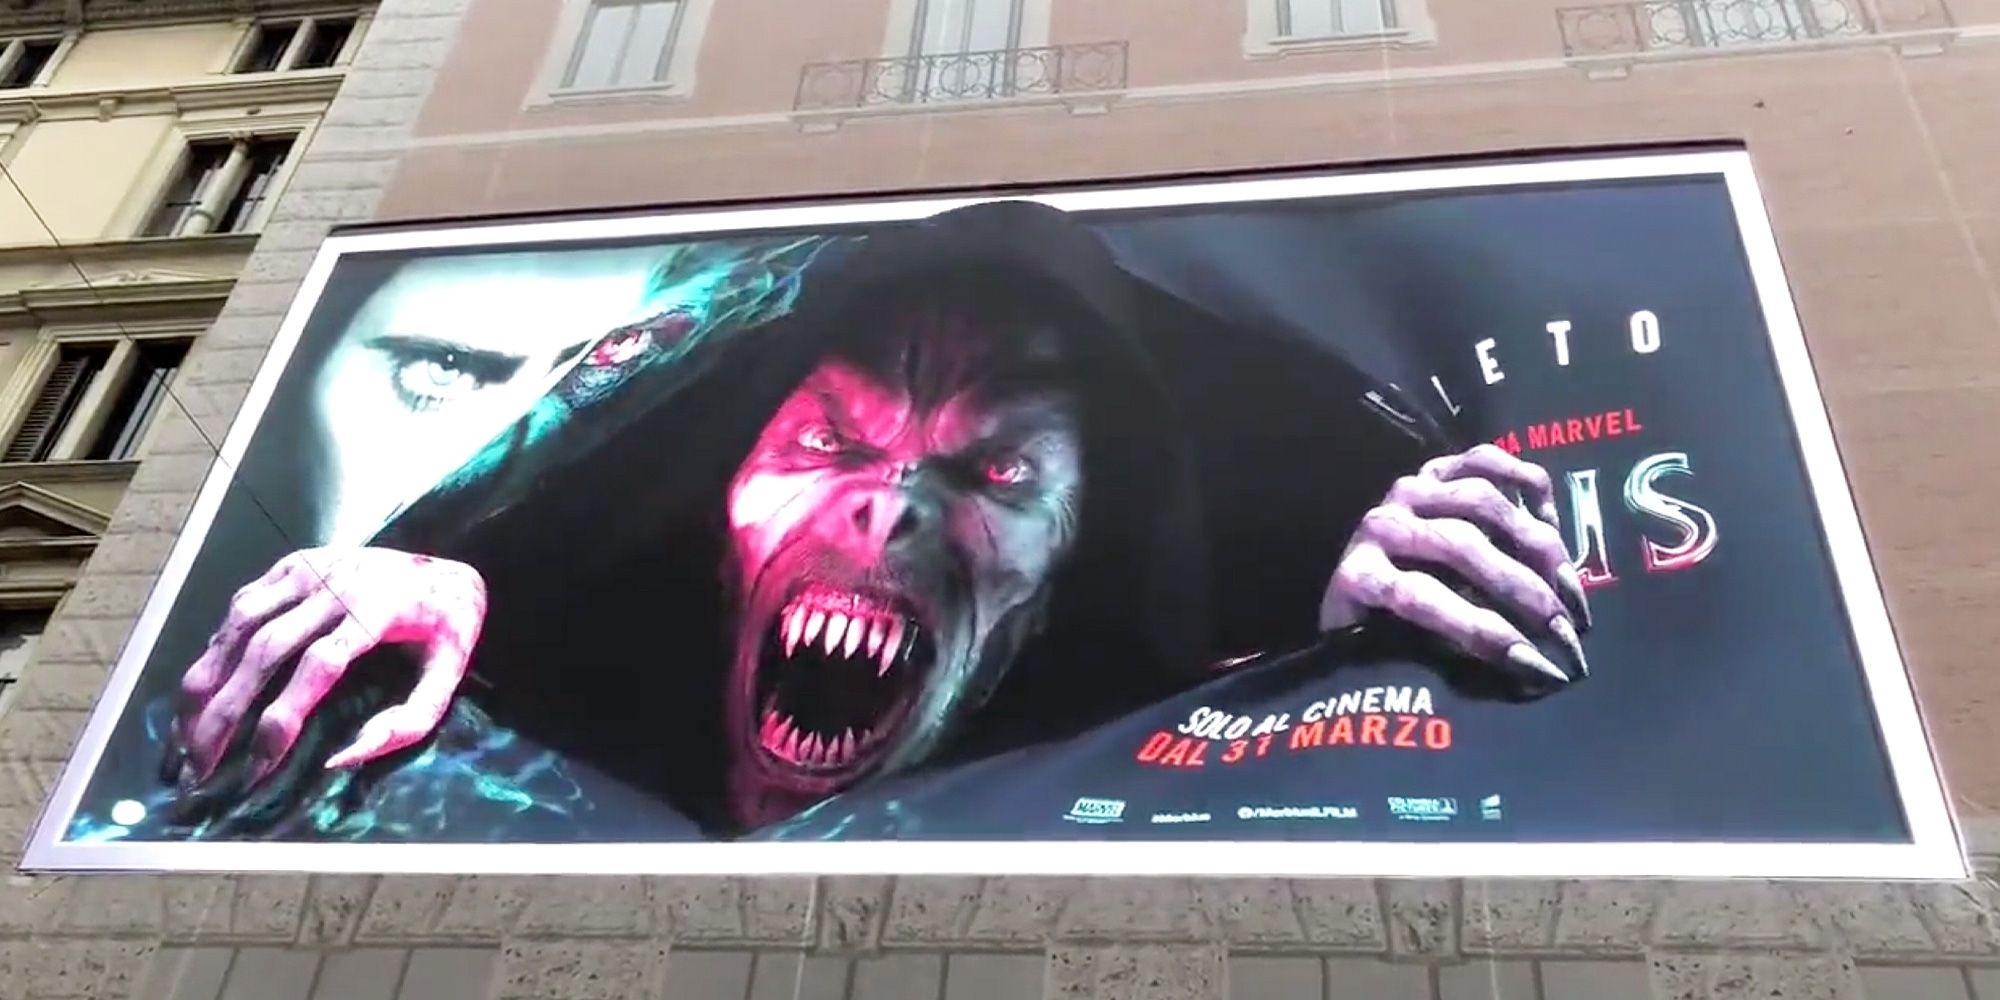 Morbius rasga a través de un anuncio publicitario en 3D en Milán